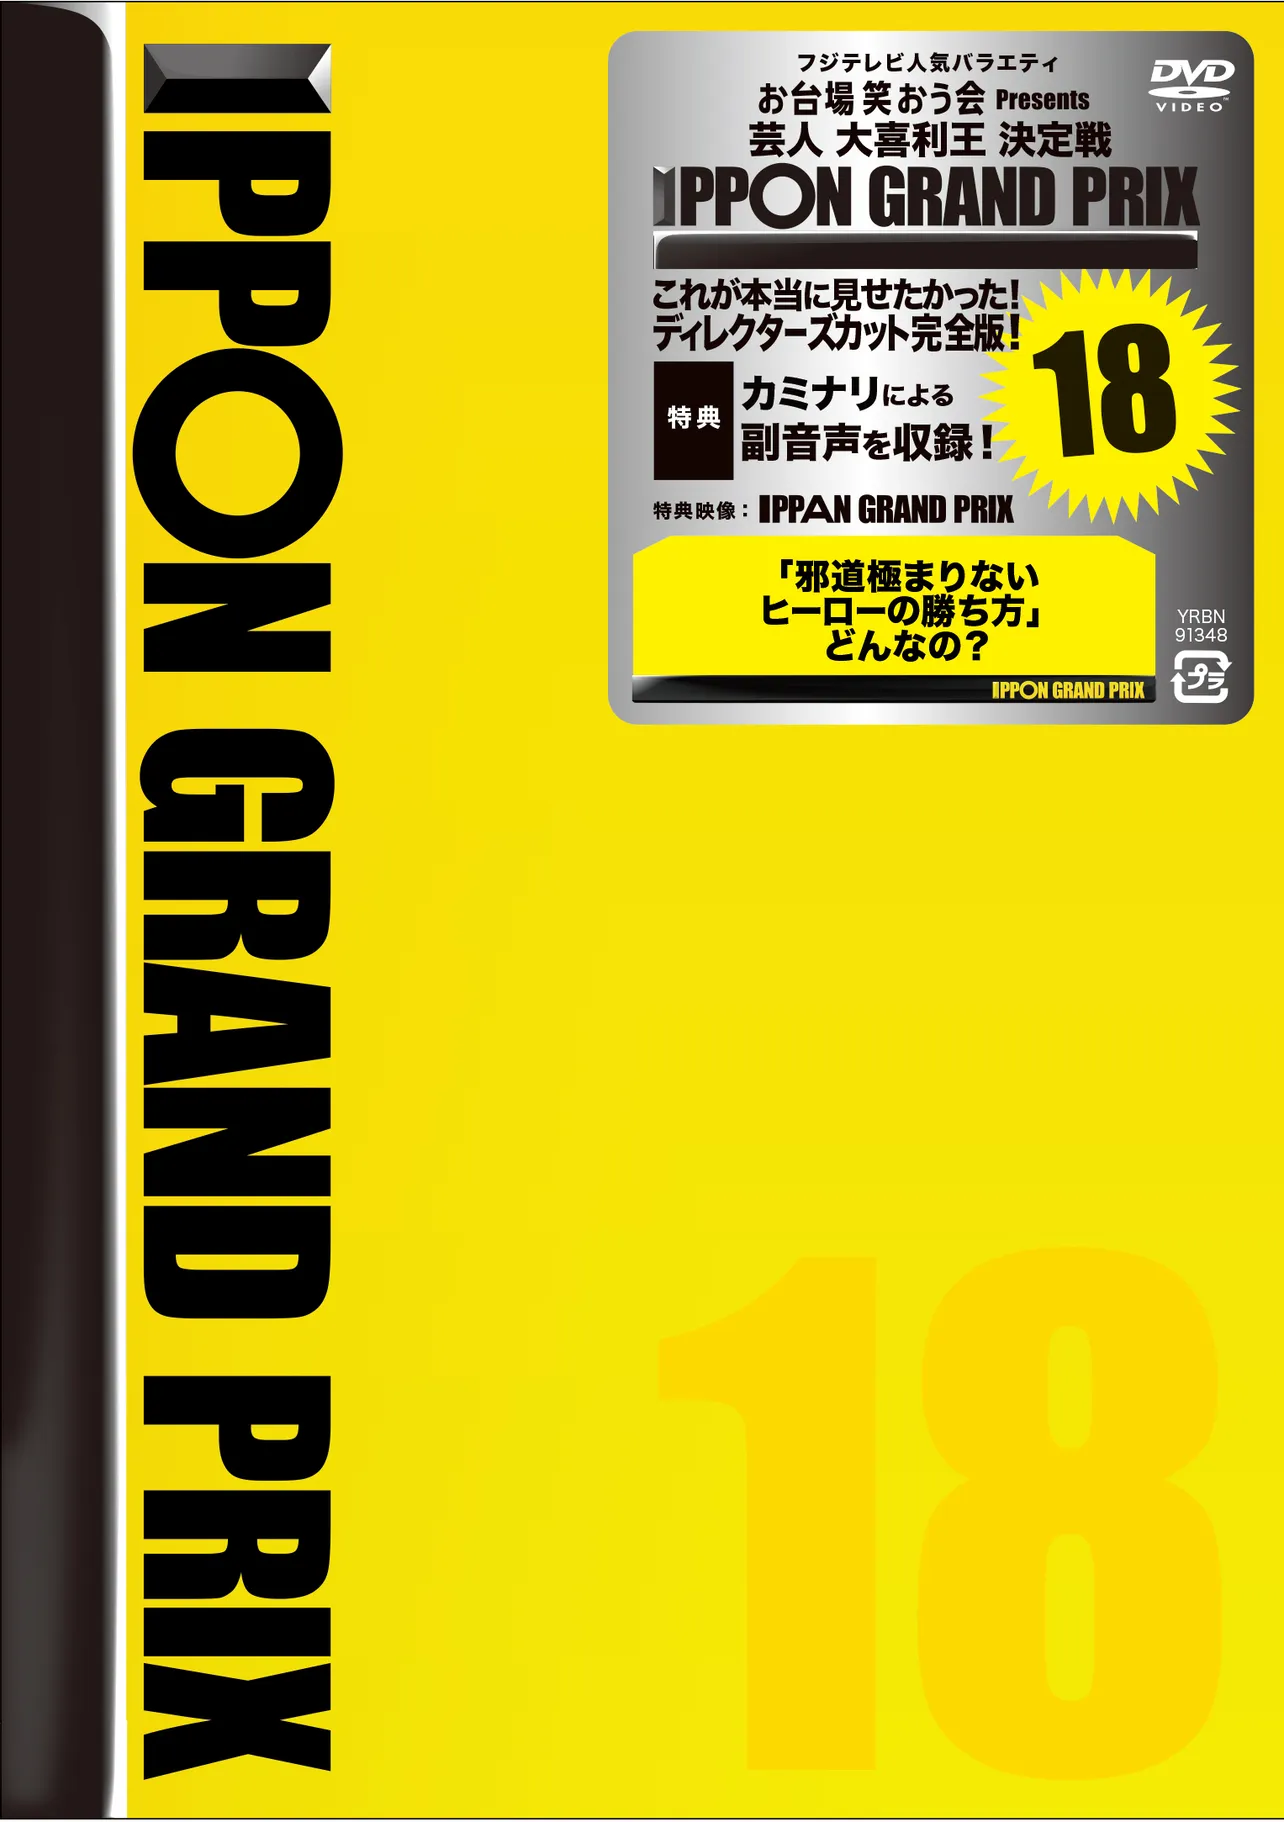 DVD「IPPONグランプリ18」ジャケット